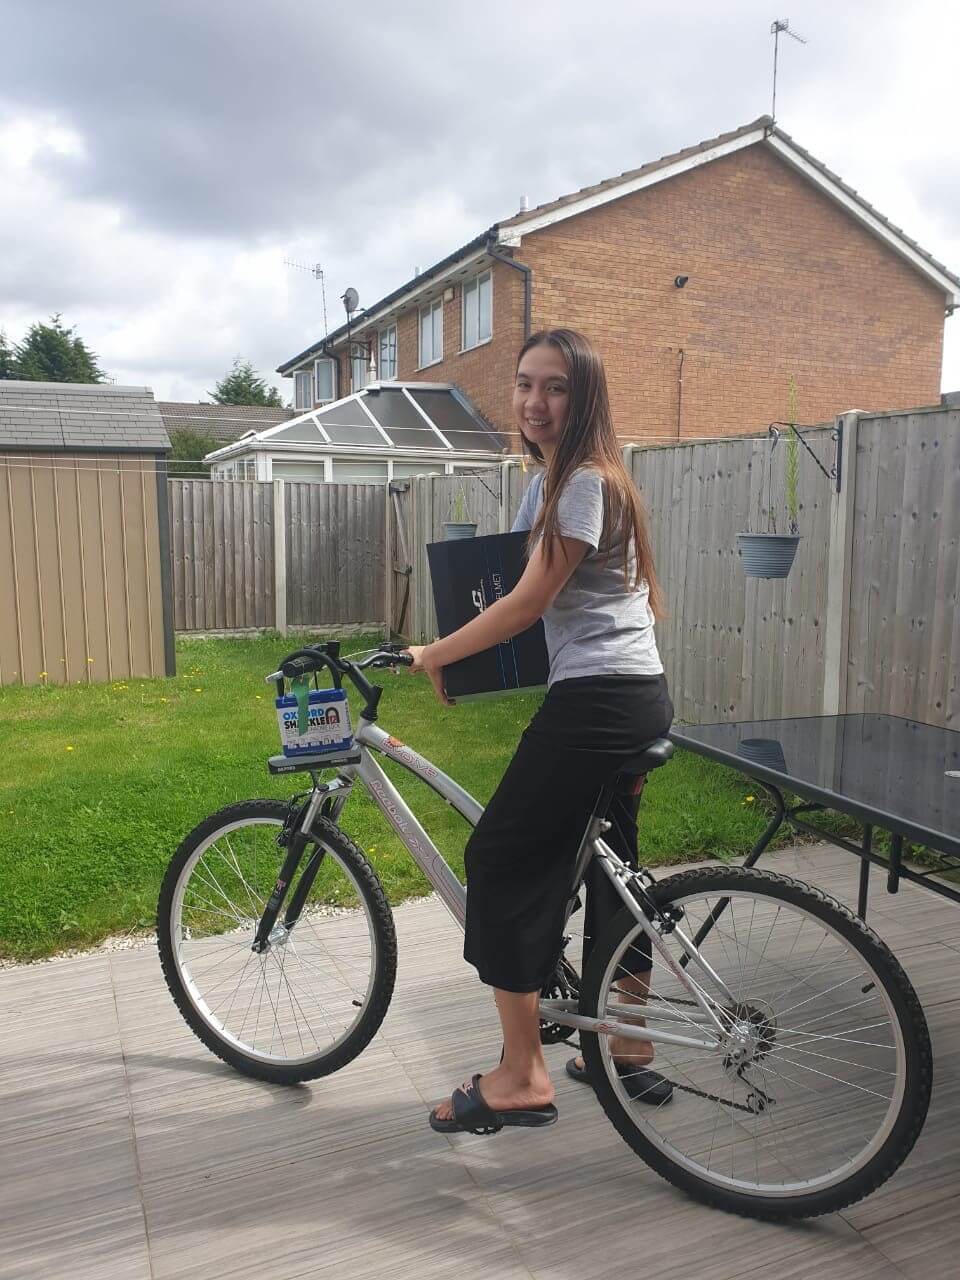 Christhel on her bike